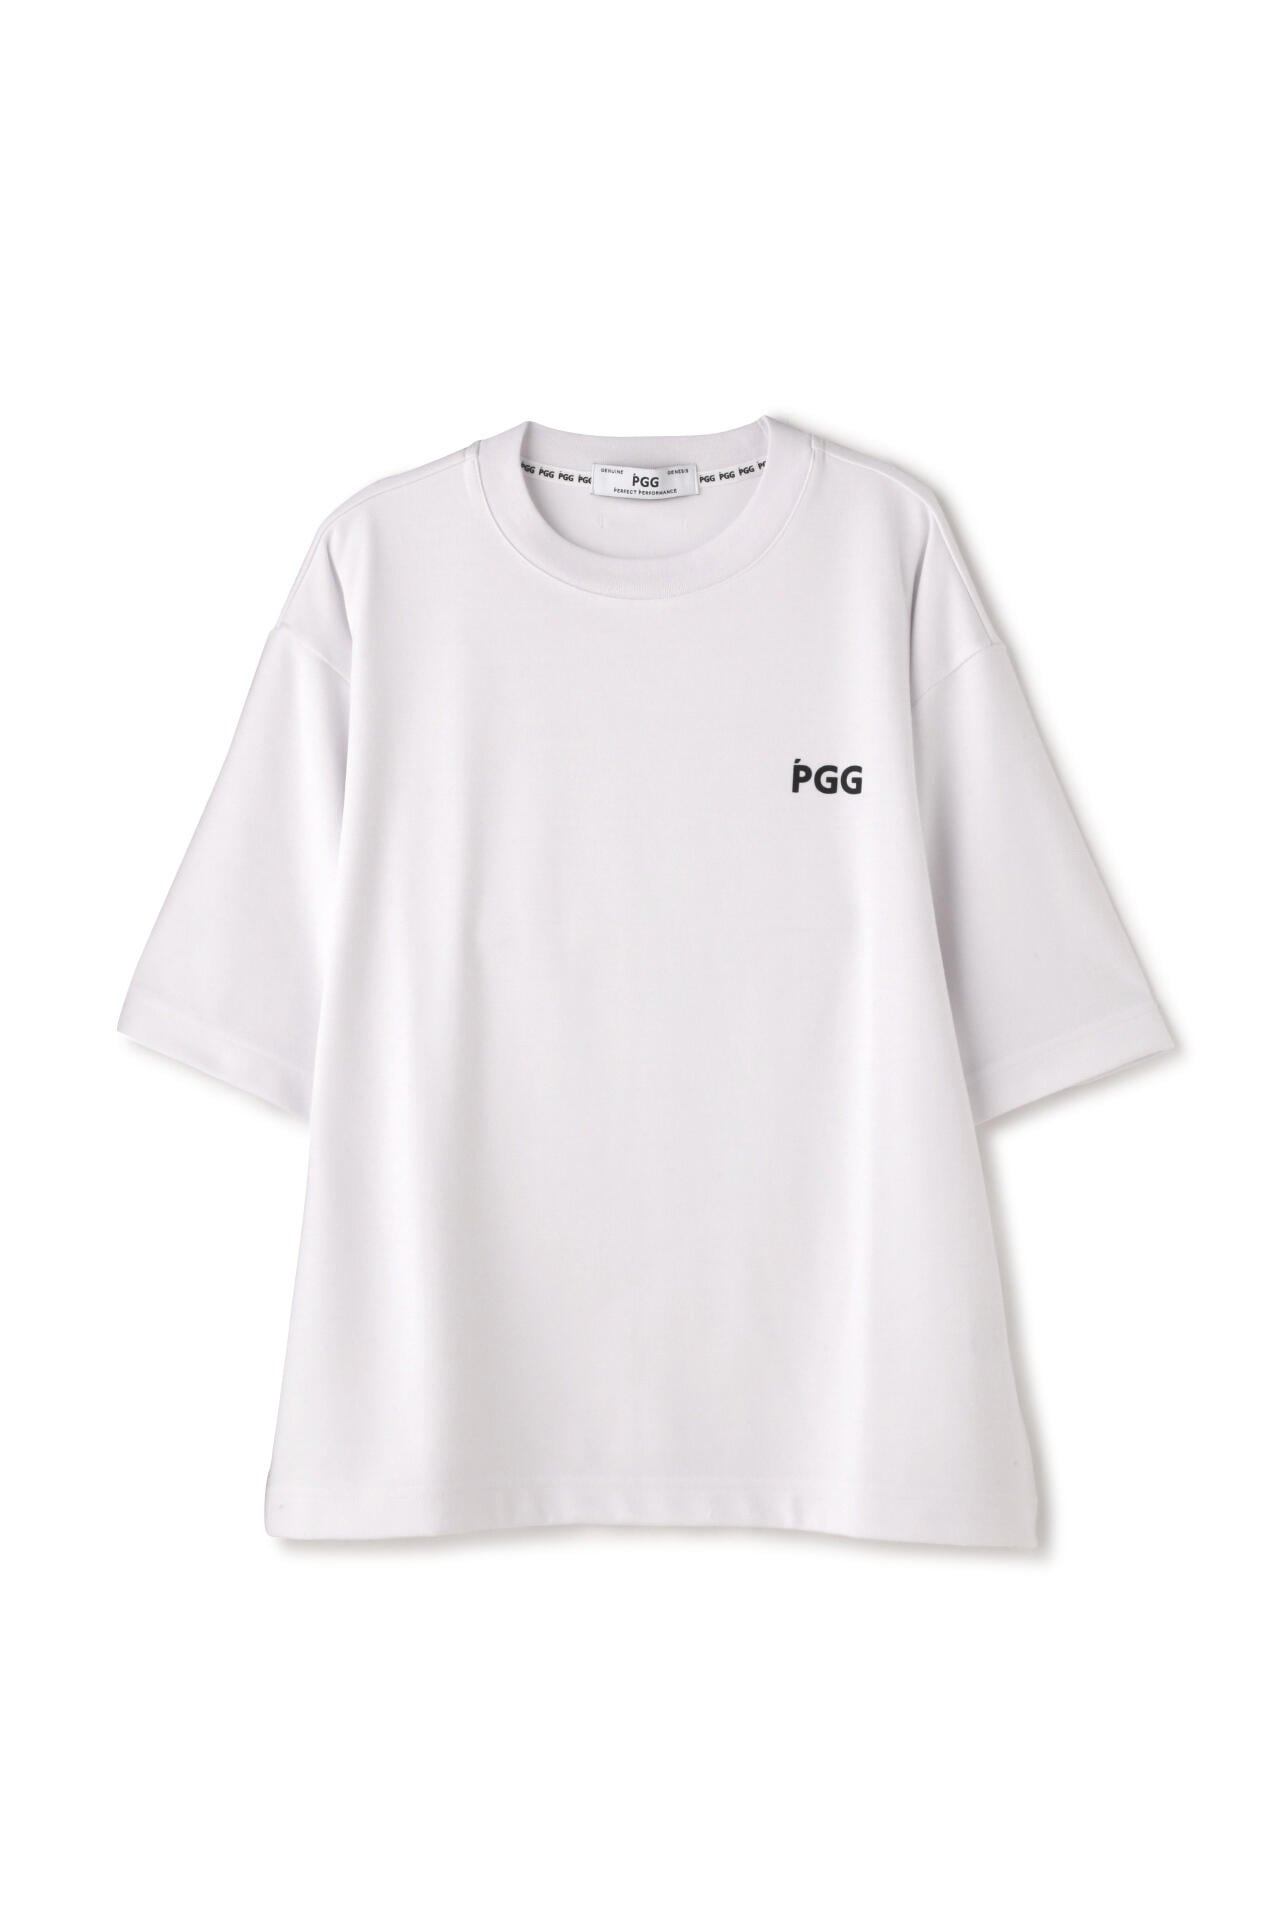 PGG Tシャツ レディース 1サイズ - ウエア(女性用)